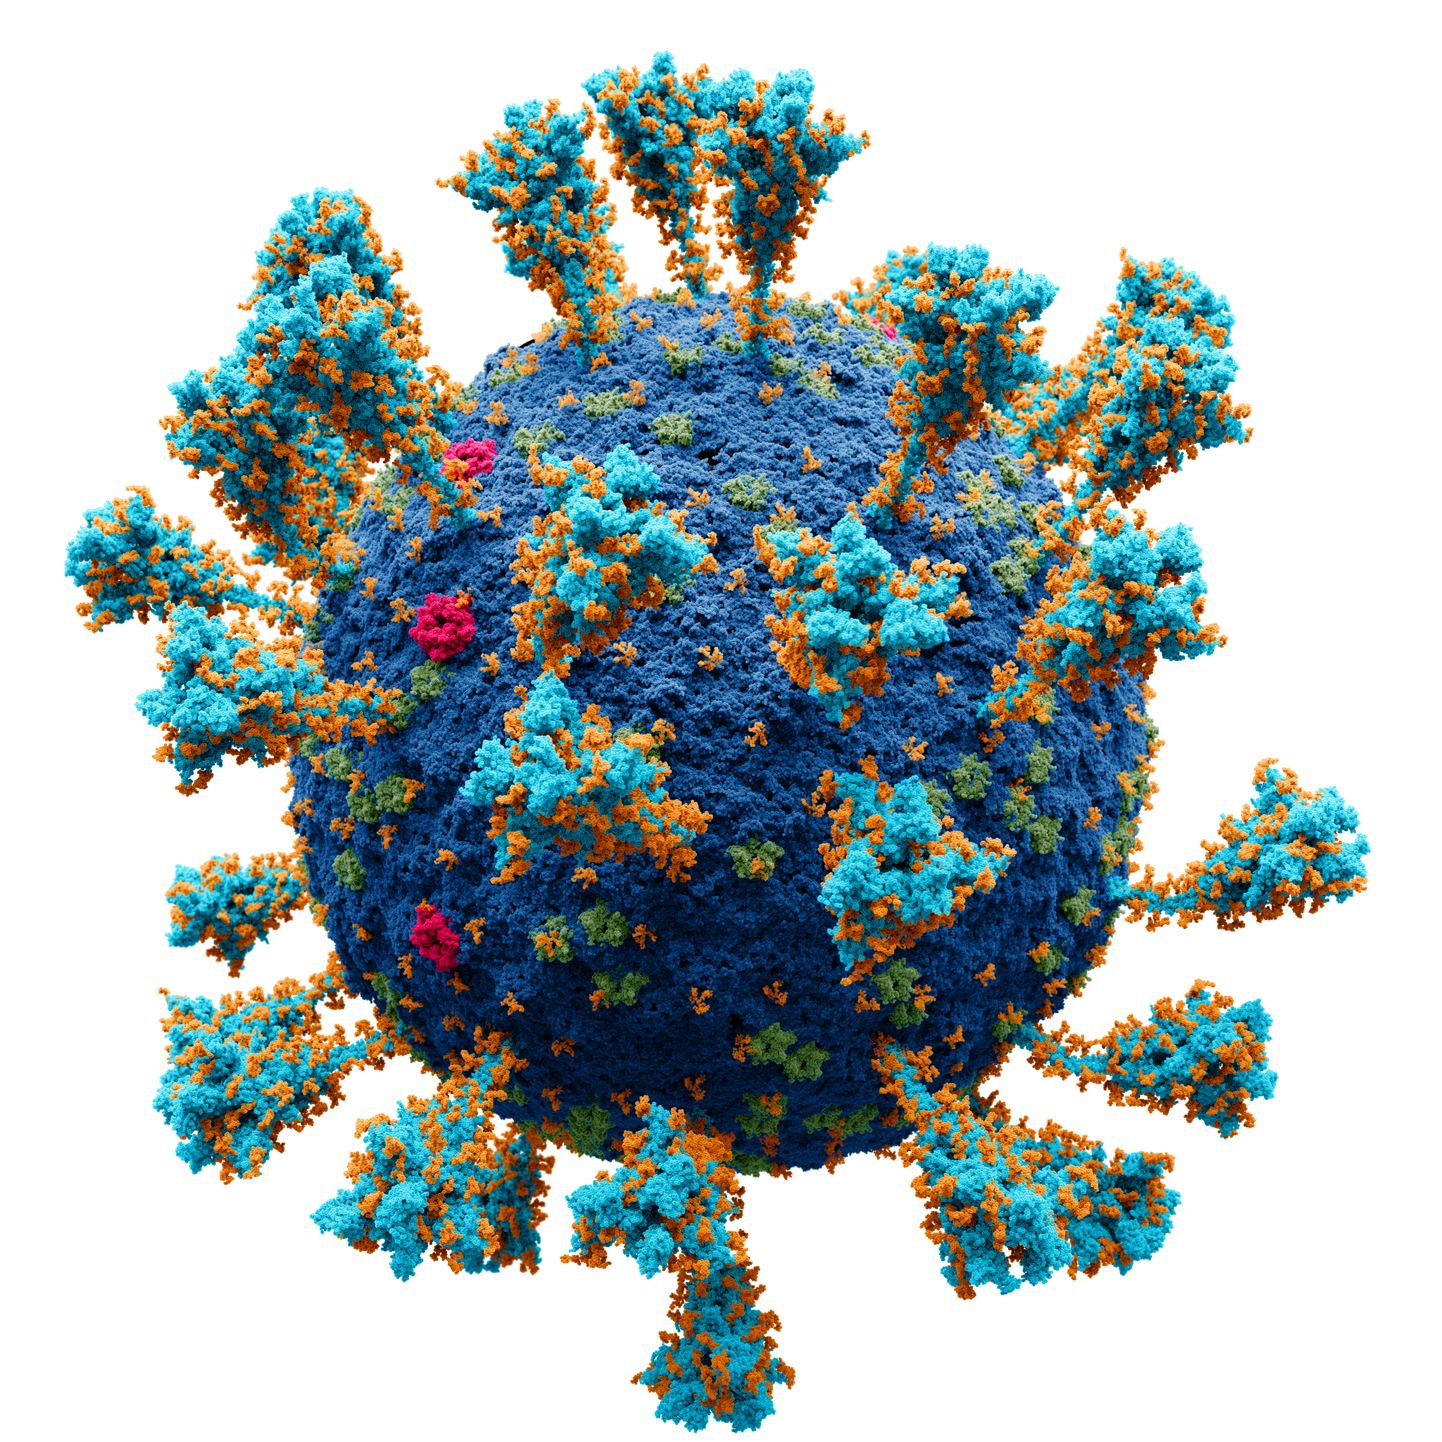 COVID-19-t põhjustava viiruse välsikihis on vähemalt neli põhivalku. 